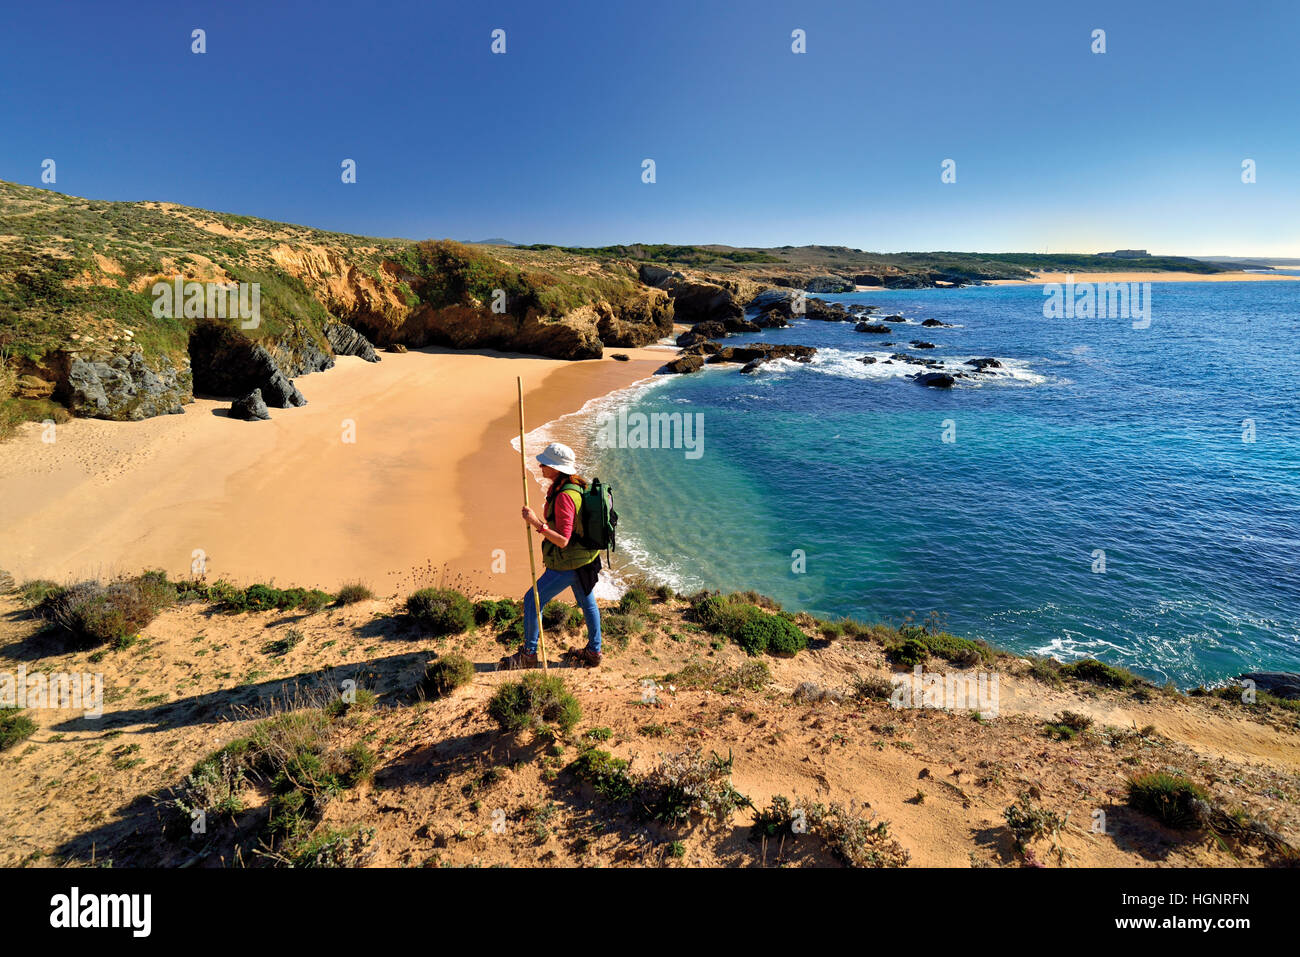 Frau mit Rucksack und Wanderstock trekking entlang einer sandigen Küstenpfad entlang einsamer Strände und eine ruhige blaue Meer Stockfoto